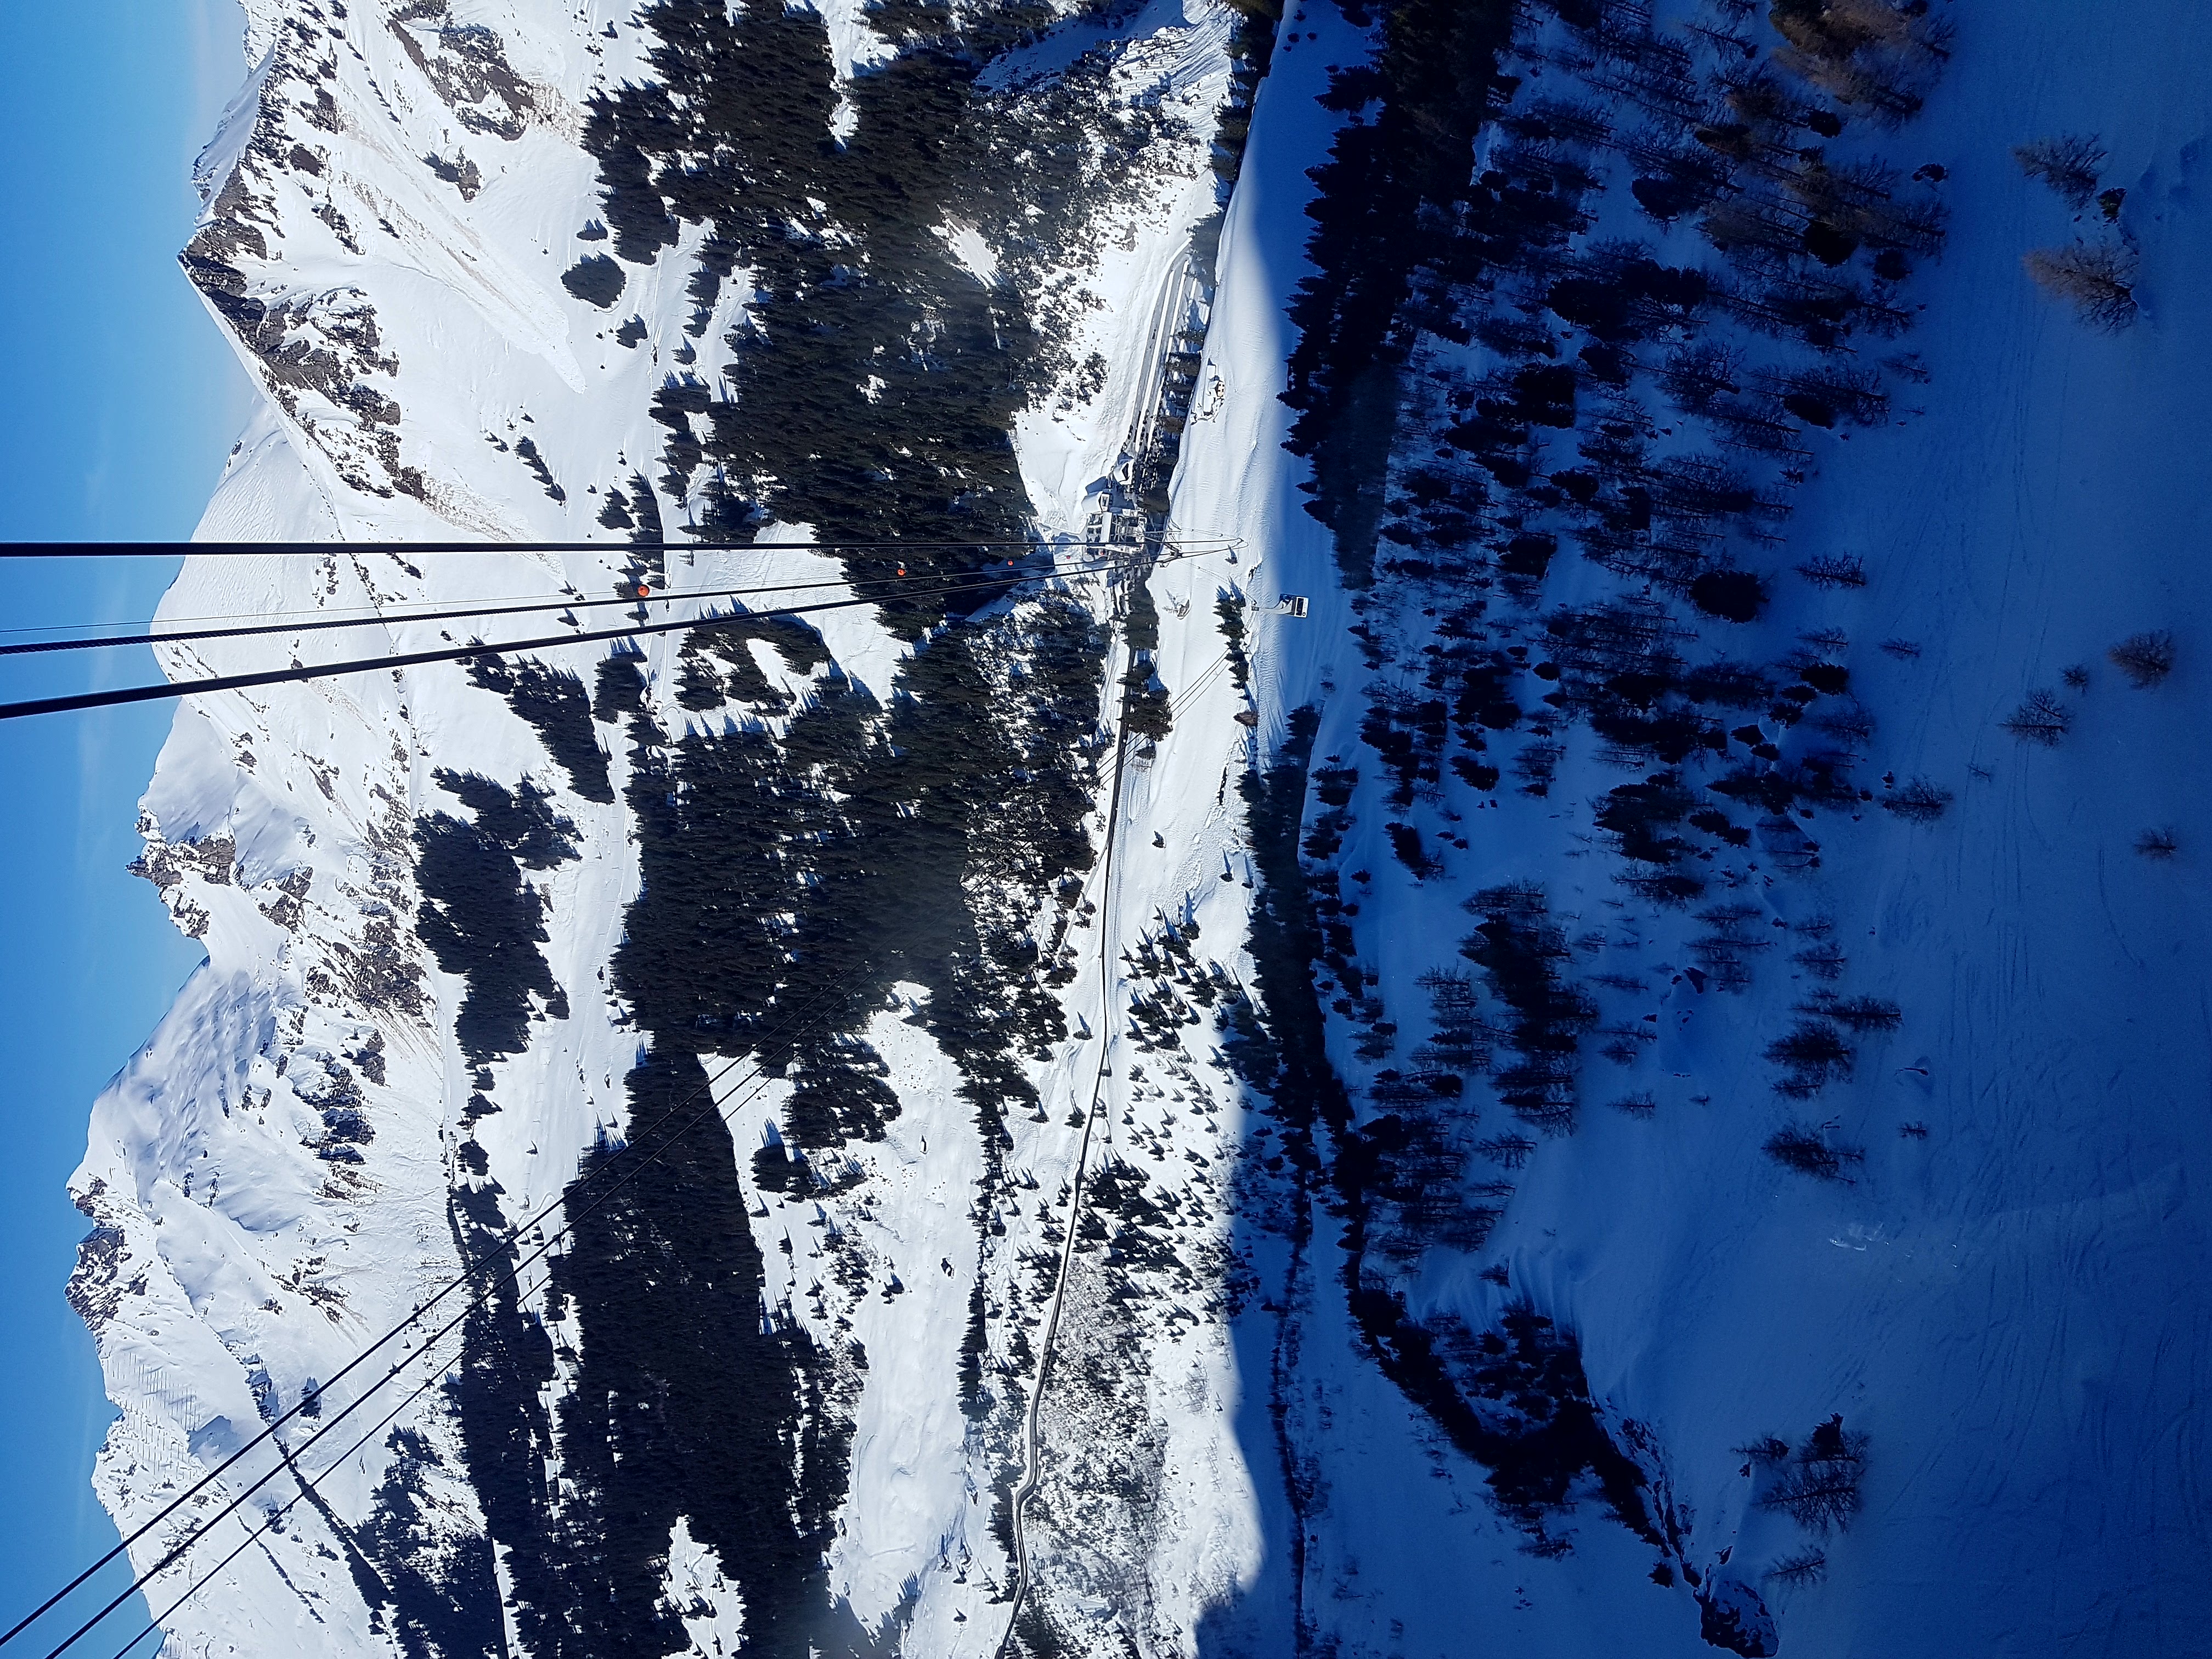 Glacier 3000 gondola view, Gstaad Glacier 3000